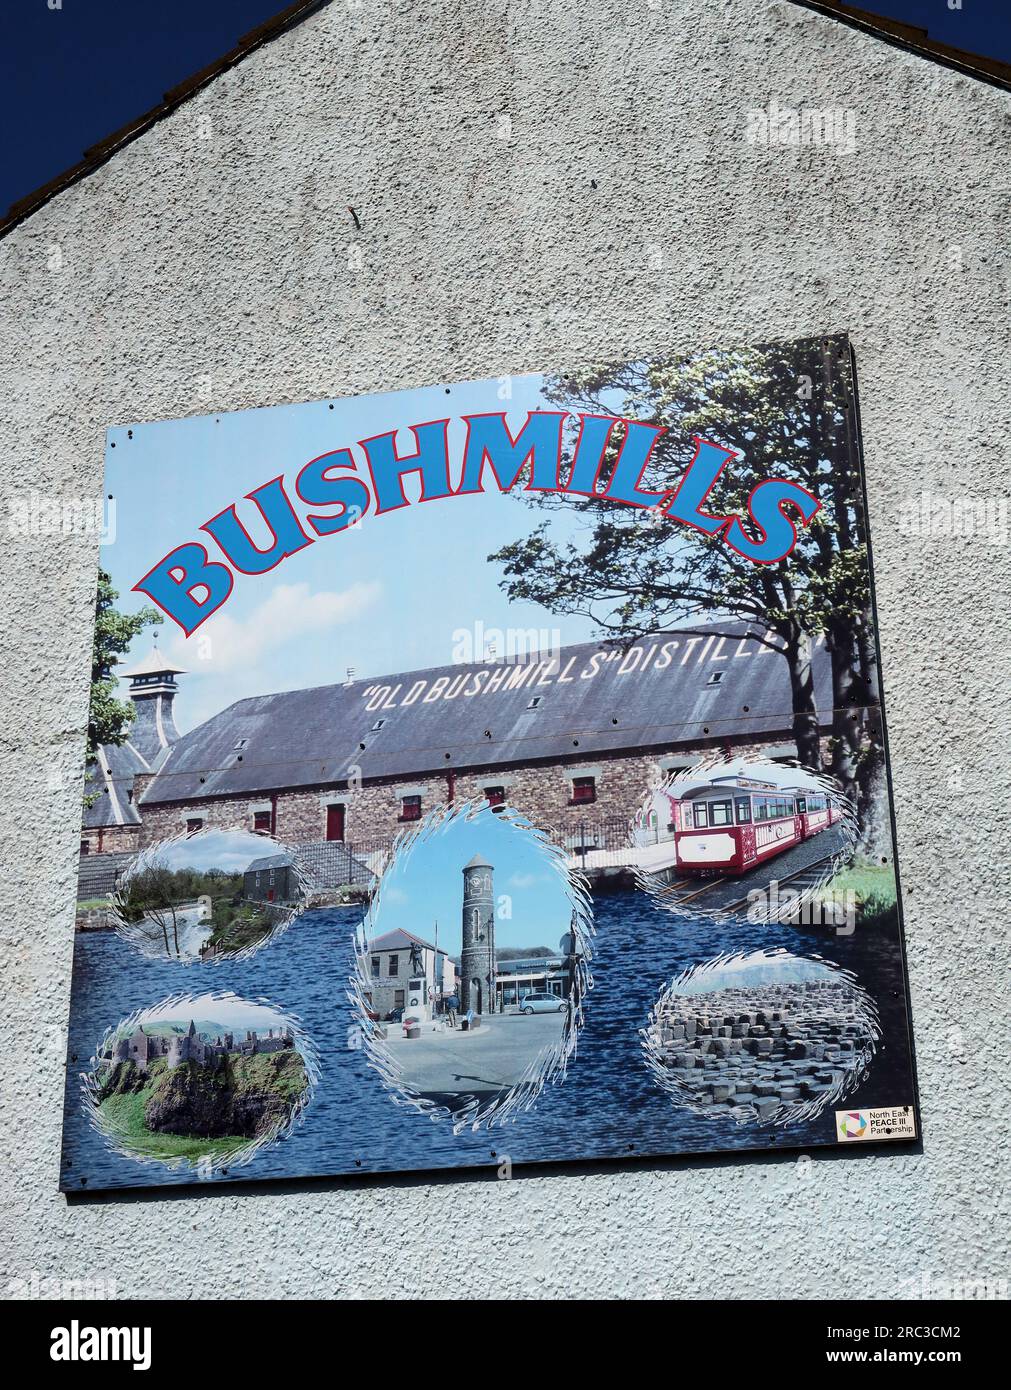 Touristenmäler in Bushmills, die das Dorf und nahe gelegene Attraktionen zeigen, Riverside CT, Bushmills, County Antrim, Nordirland, UK, BT57 8SF Stockfoto